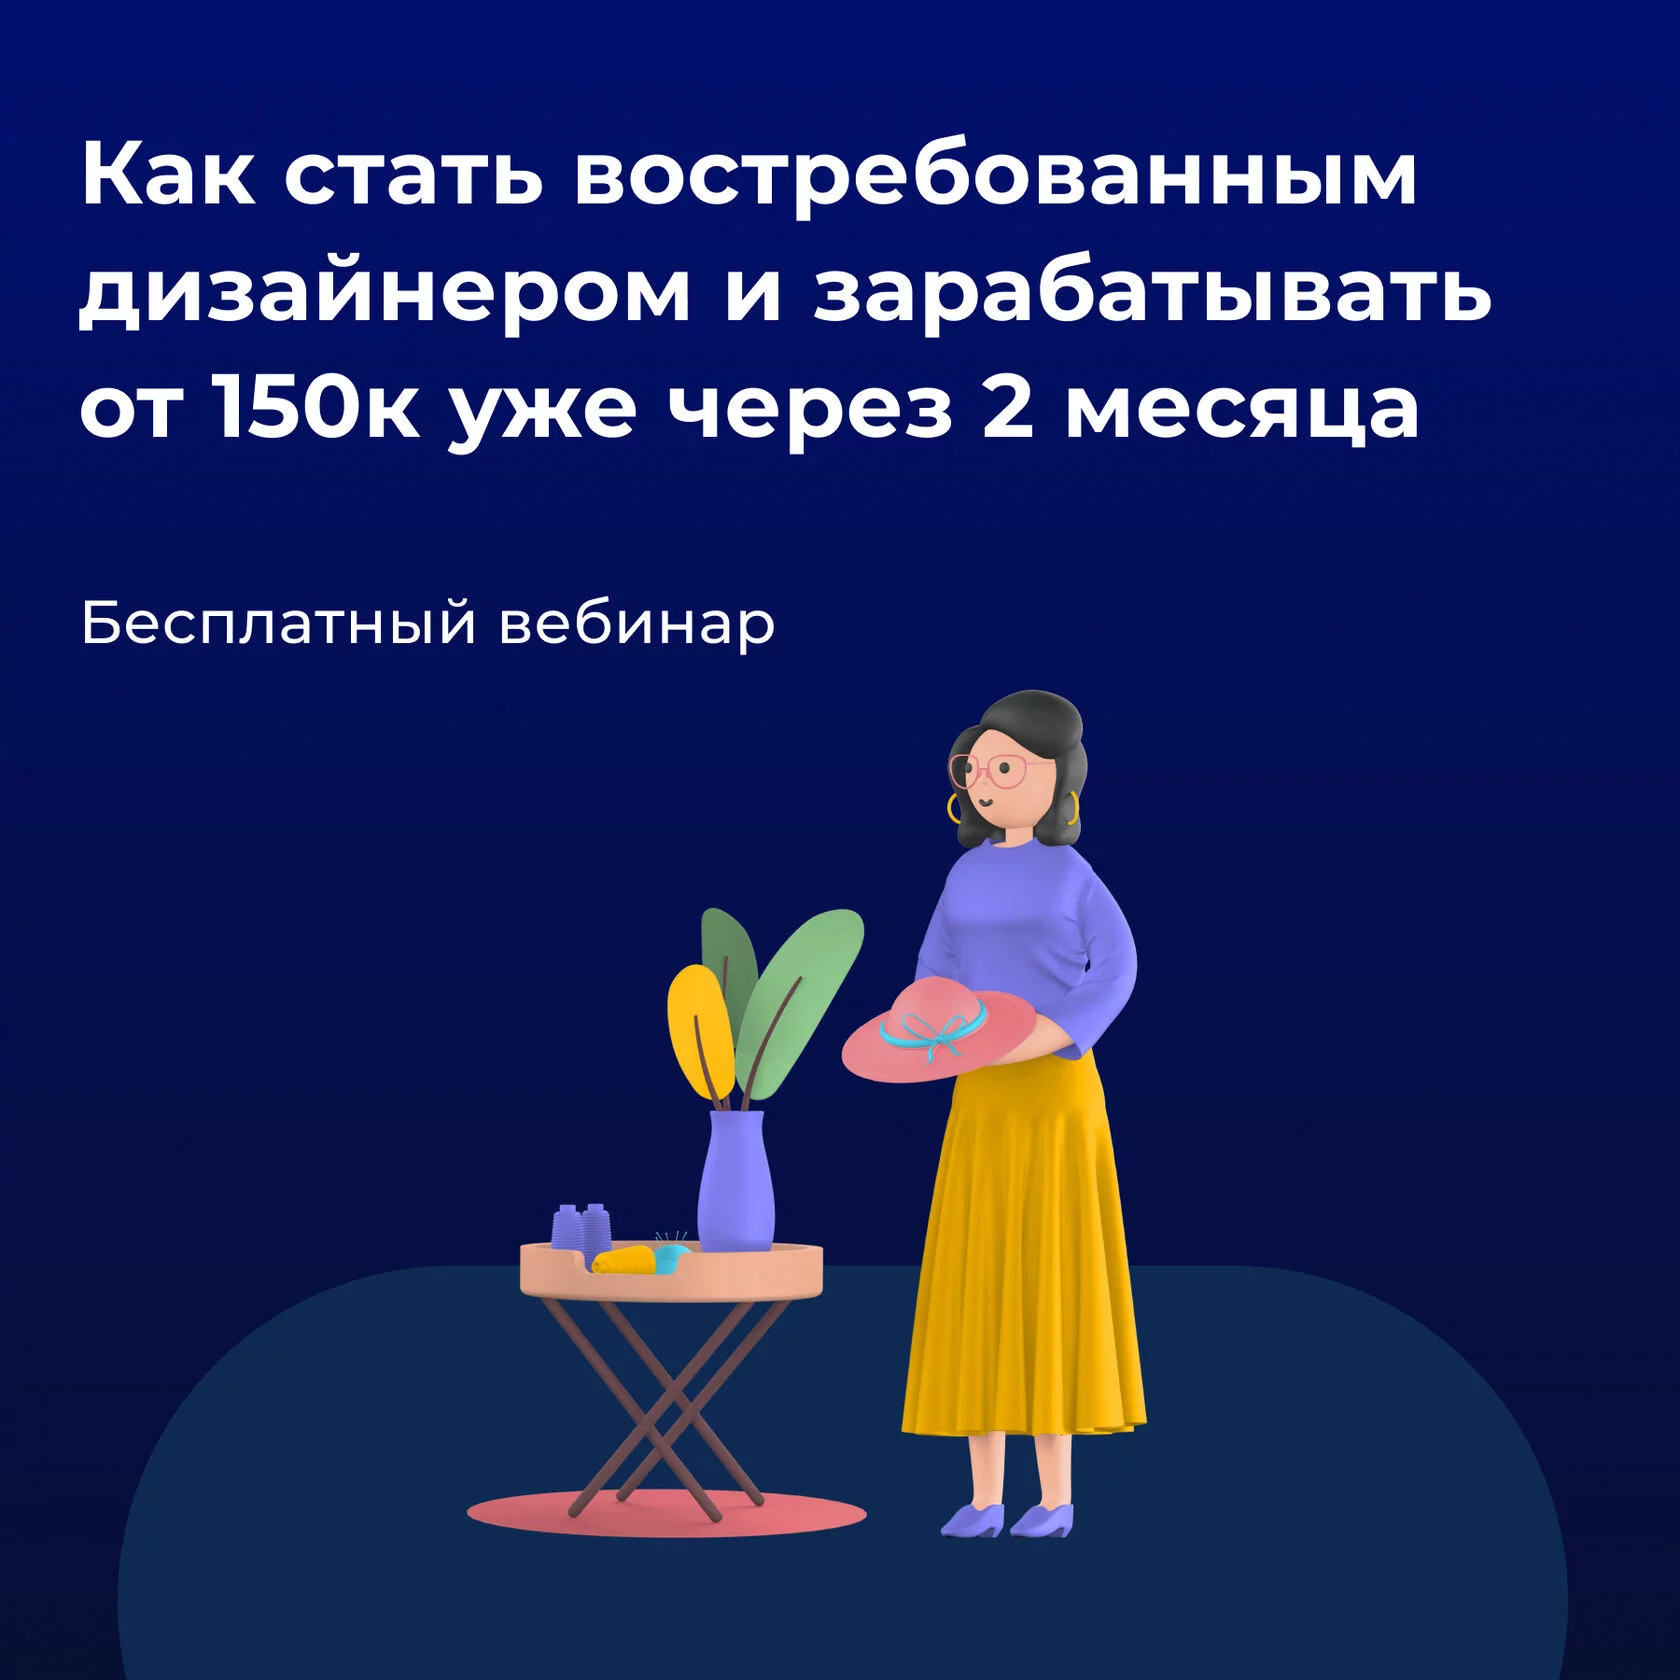 Как стать востребованным дизайнером и зарабатывать от 150 000 рублей уже через 2 месяца (Академия EDPRO)